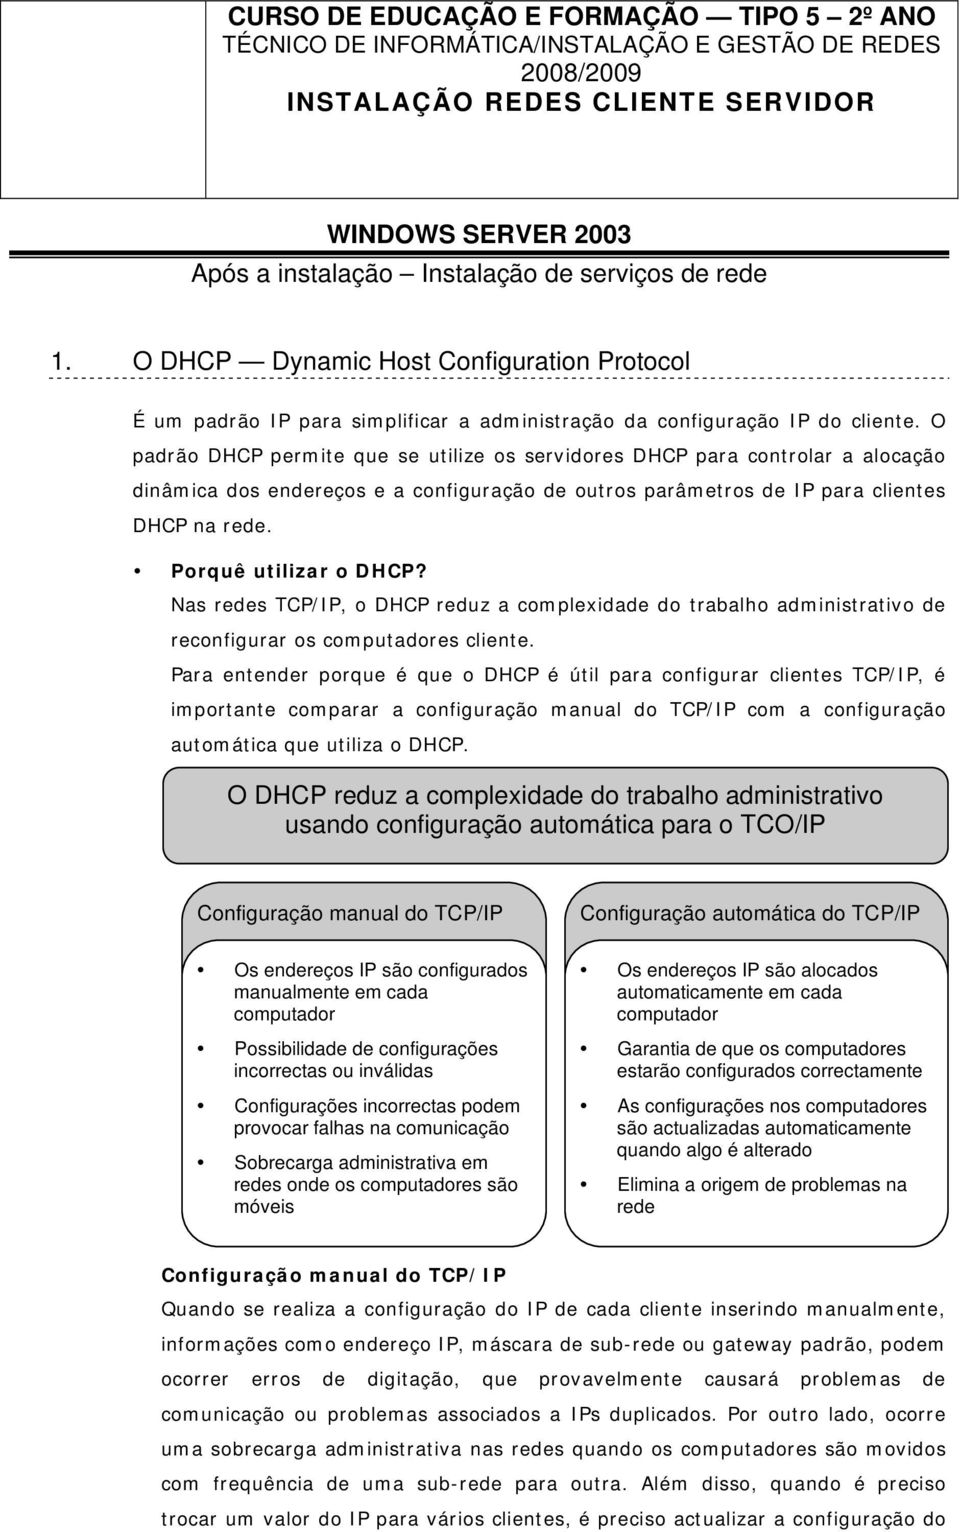 O padrão DHCP permite que se utilize os servidores DHCP para controlar a alocação dinâmica dos endereços e a configuração de outros parâmetros de IP para clientes DHCP na rede. Porquê utilizar o DHCP?